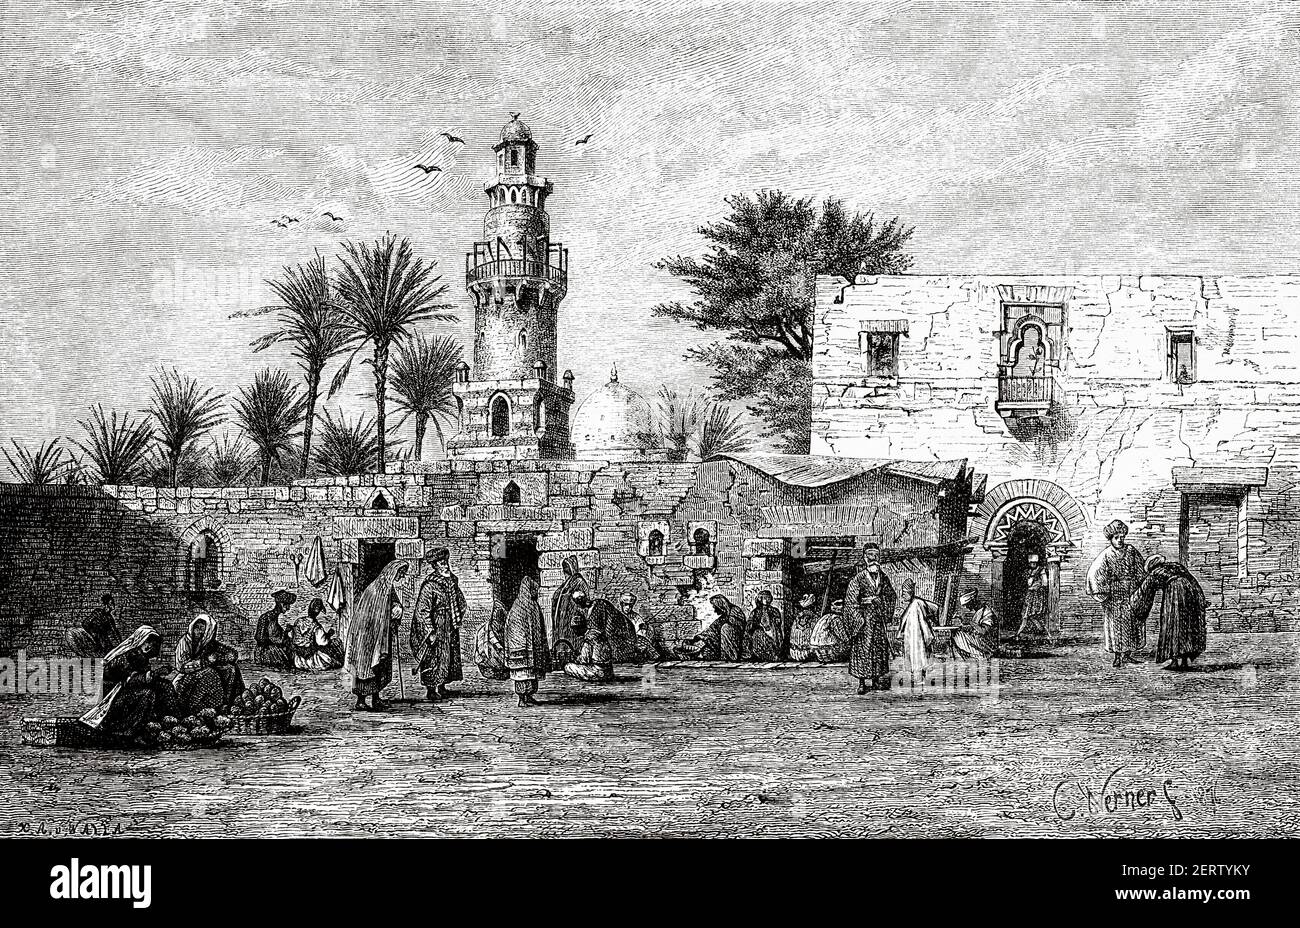 La place du marché à Esna, Egypte au XIX siècle. Afrique. Ancienne illustration gravée du XIXe siècle, El Mundo Ilustrado 1881 Banque D'Images